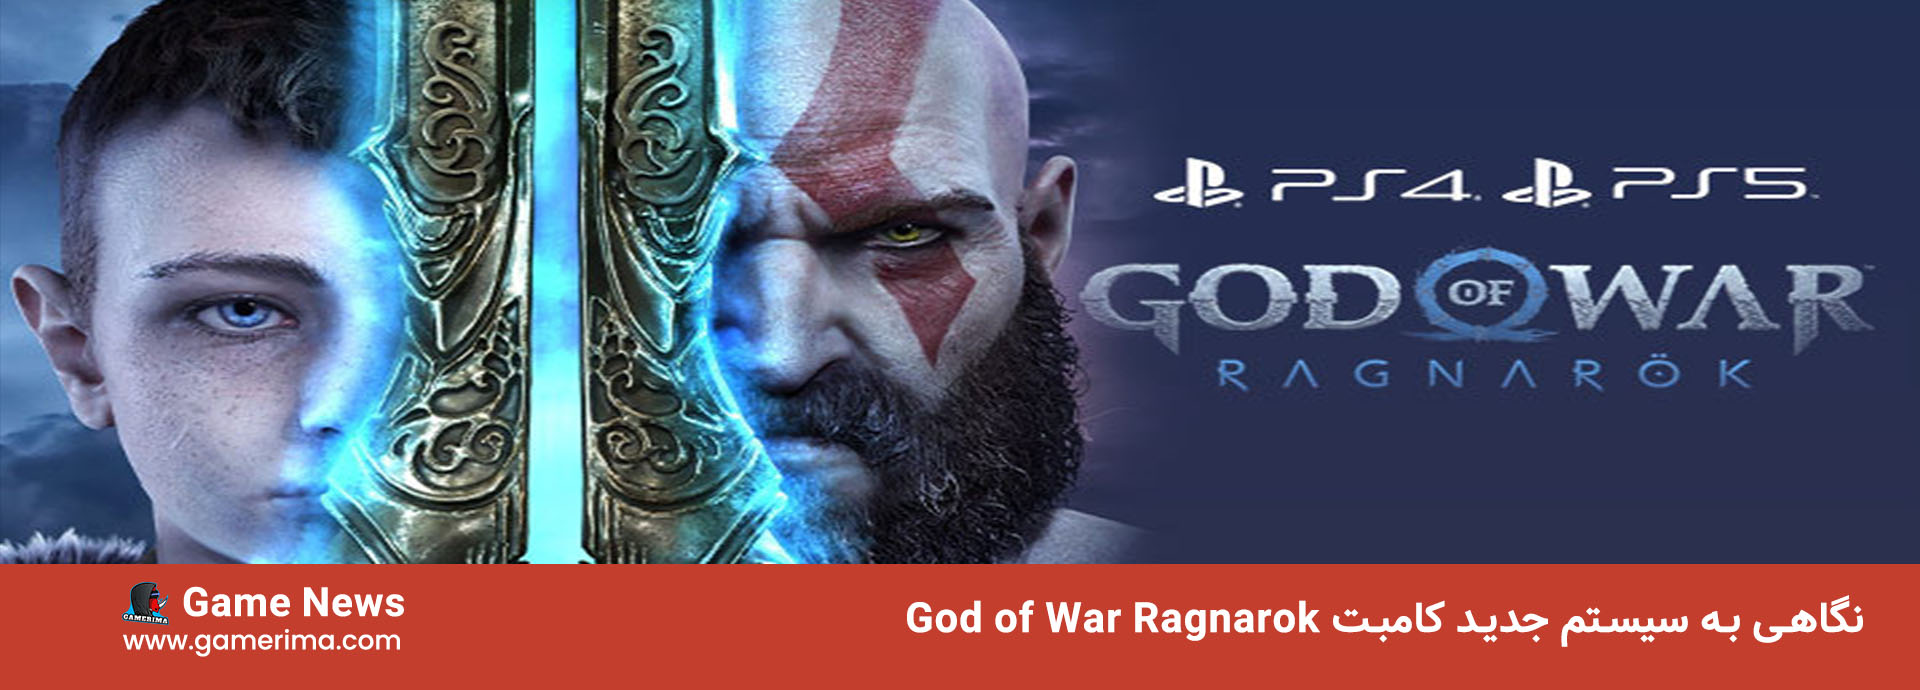 نگاهی به سیستم جدید کامبت God of War Ragnarok